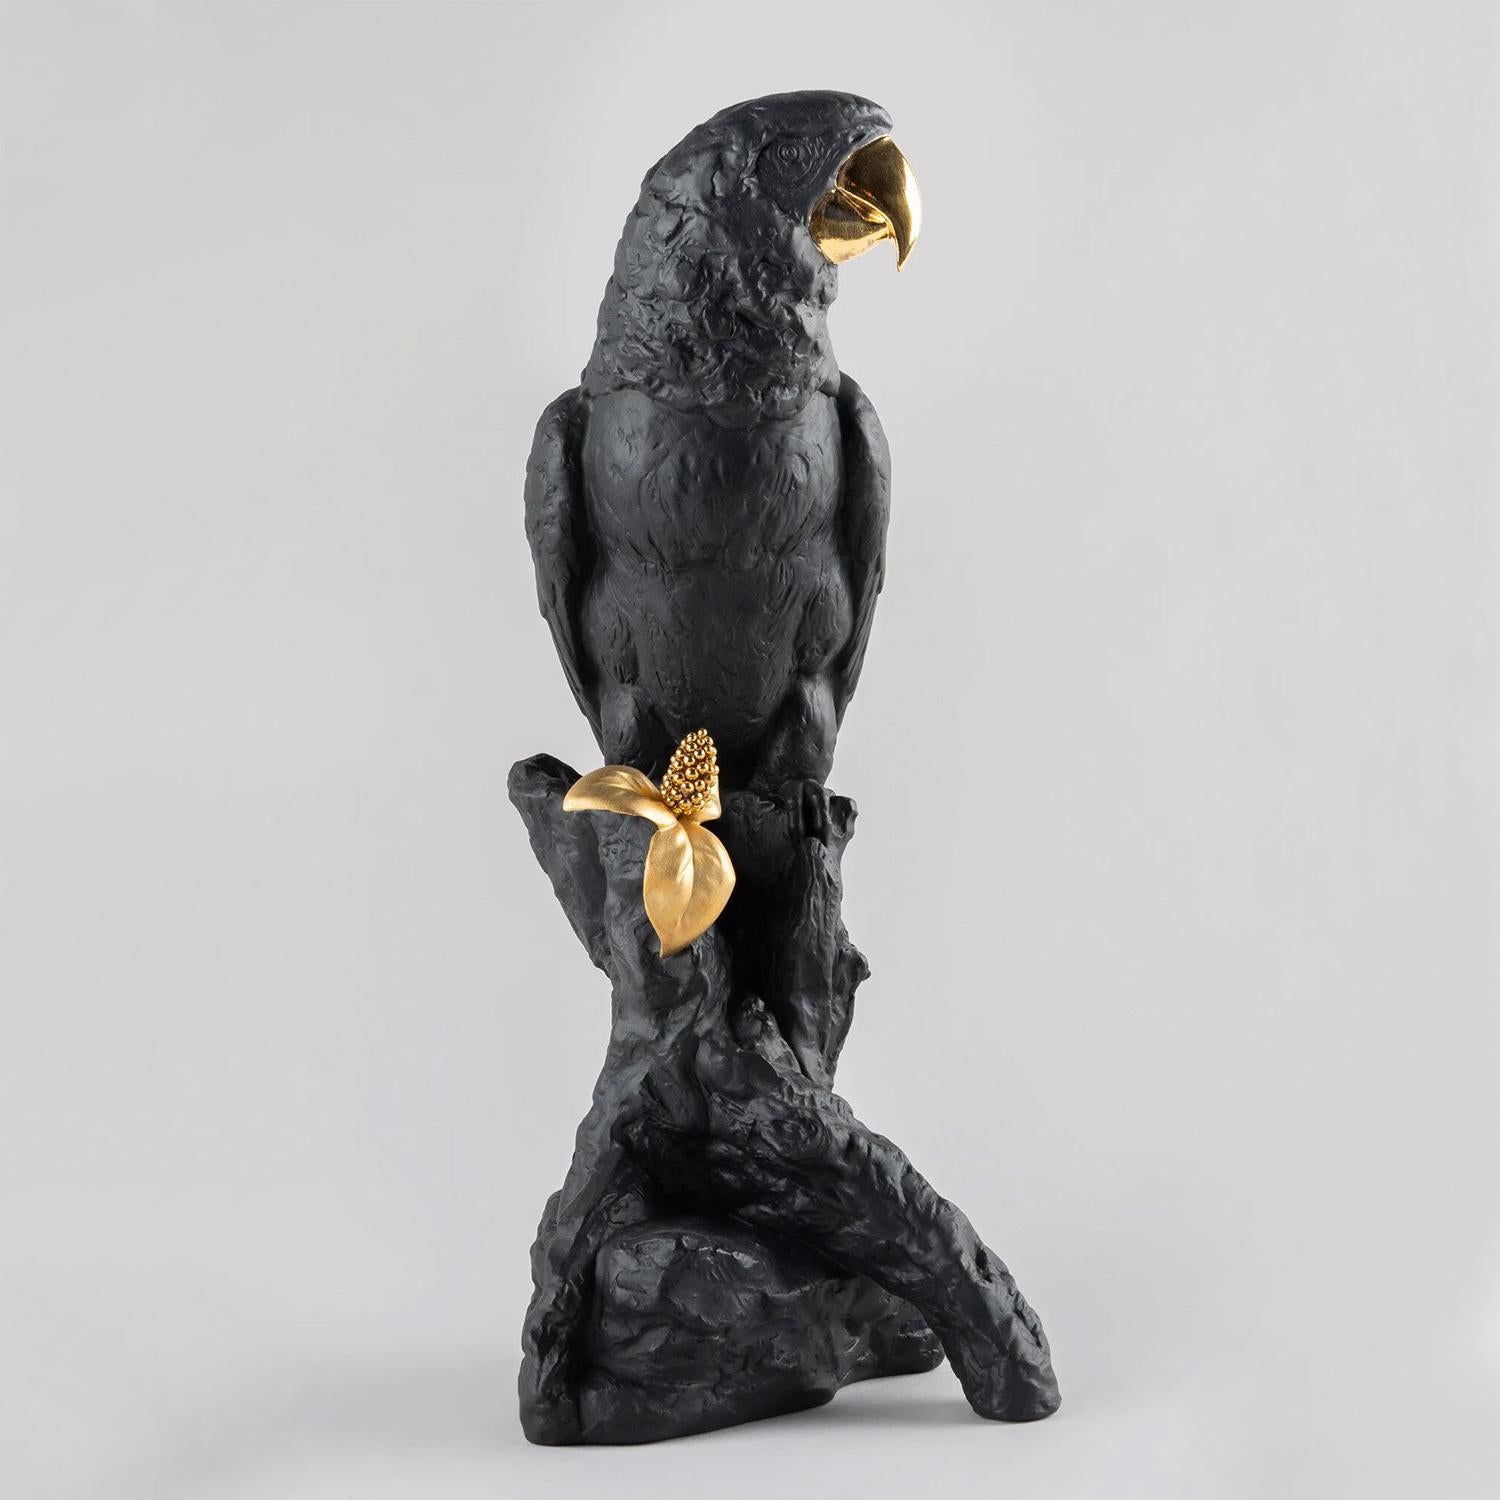 Sculpture Perroquet foncé et or avec toute la structure en 
porcelaine en noir mat et en or brillant.